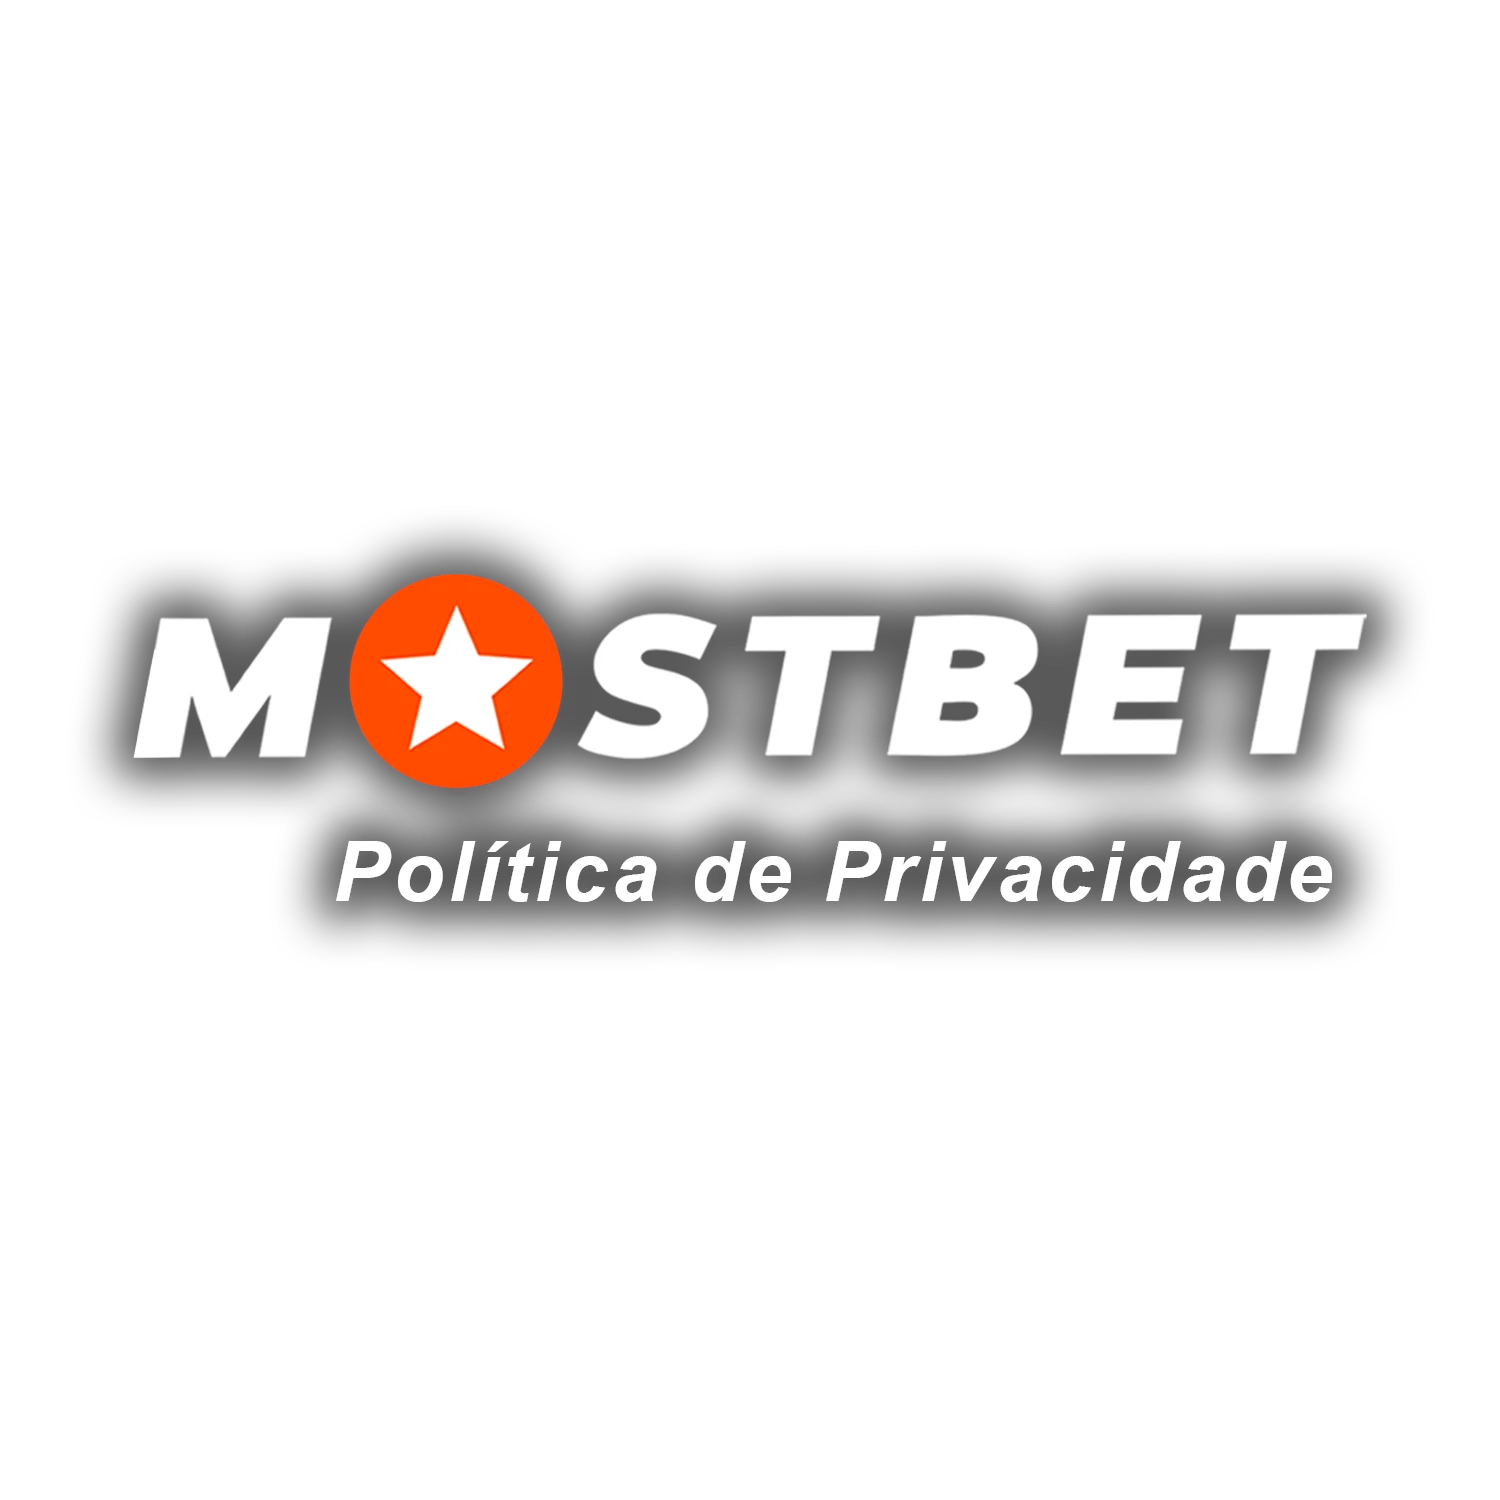 Conheça a política de privacidade da Mostbet.